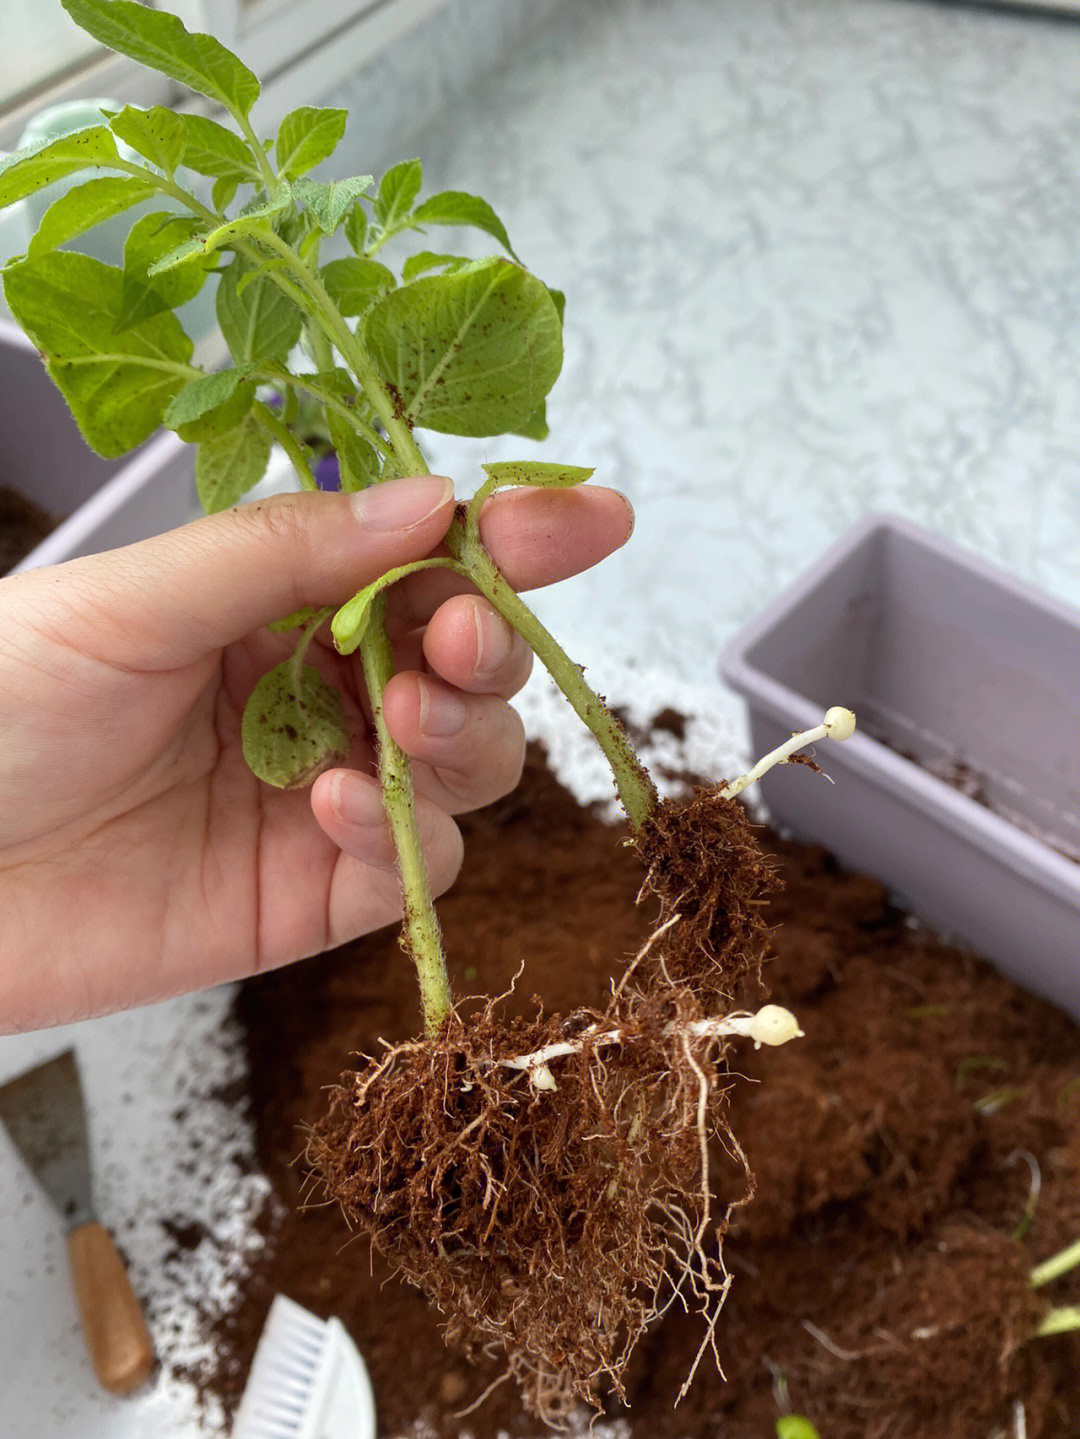 第三次移栽这些土豆,换一个大盆上次剪掉的分枝扦插到土里居然长的